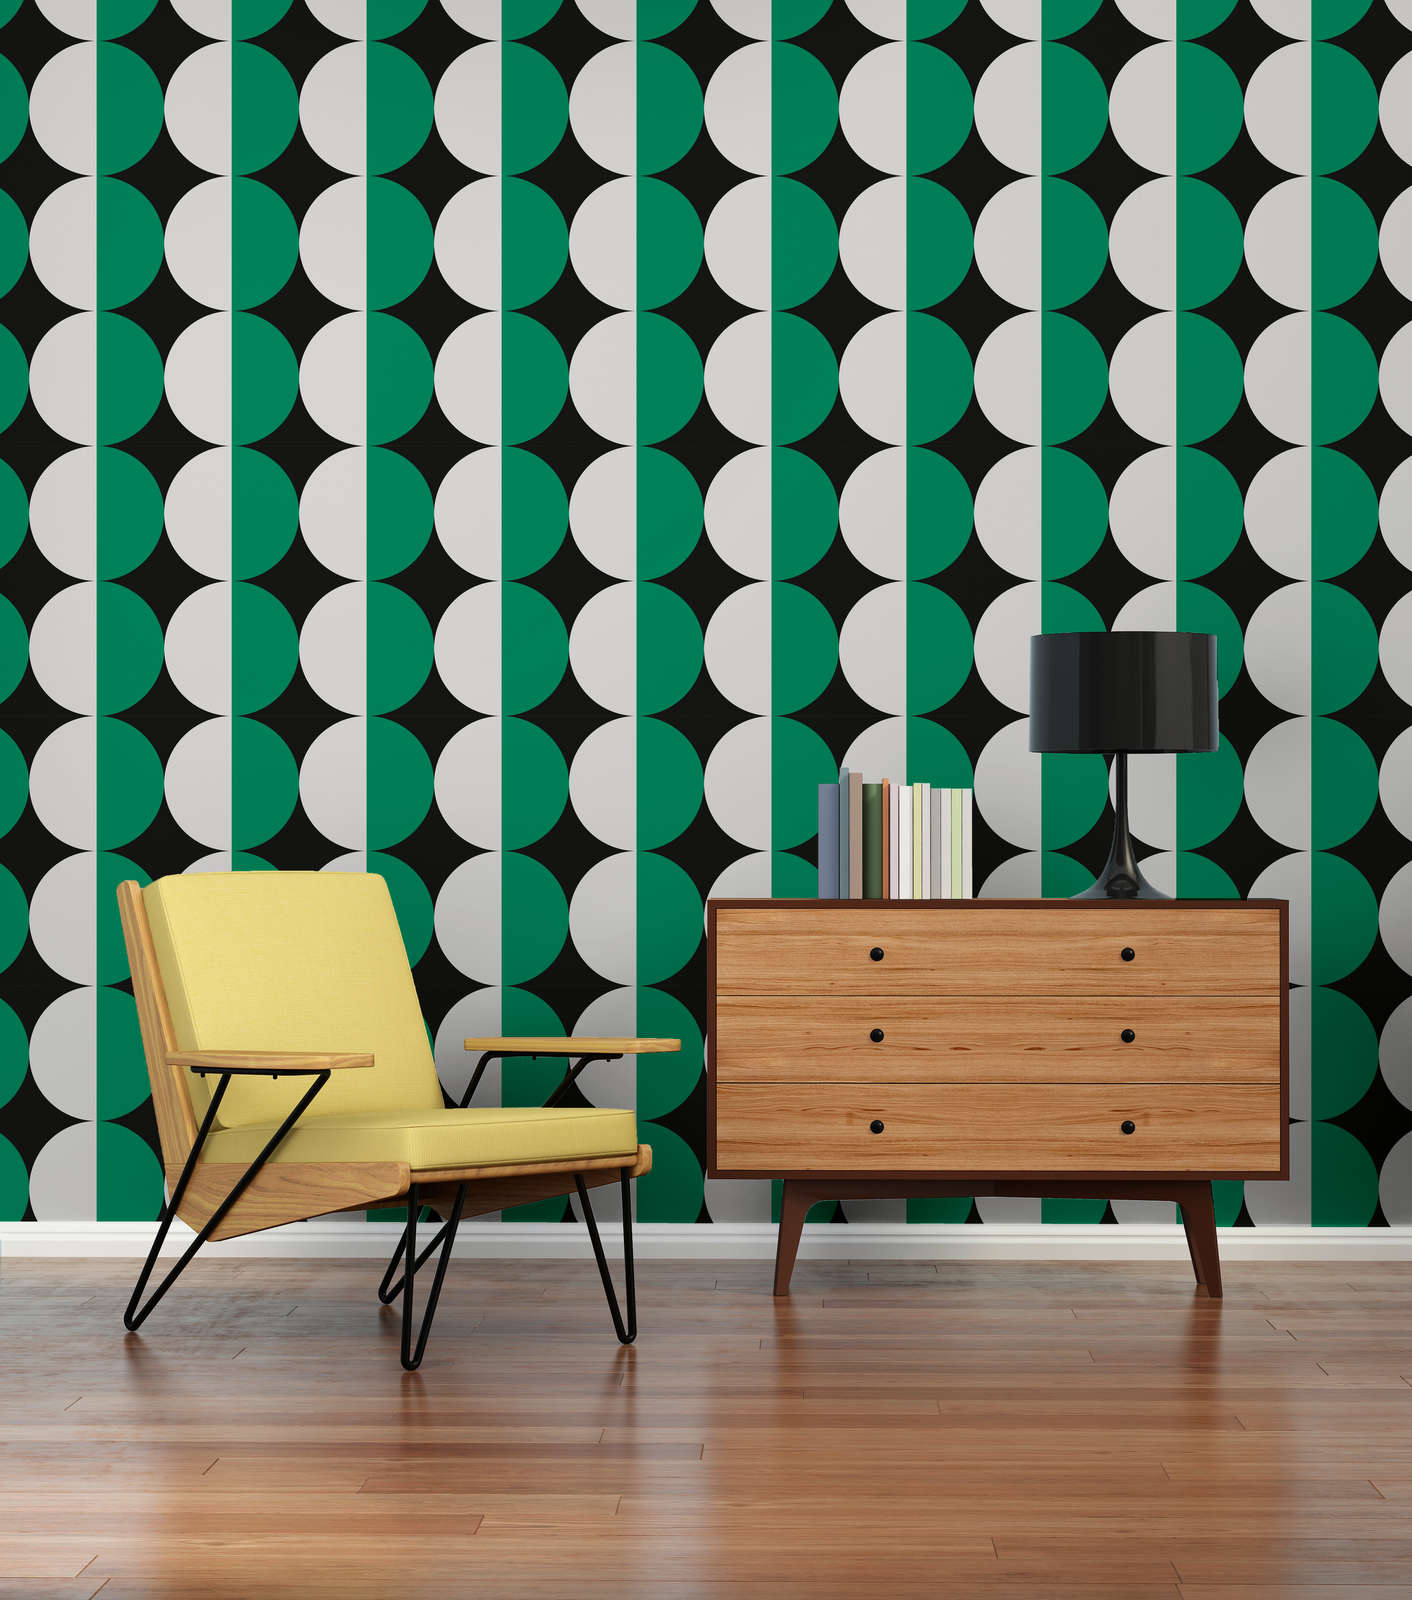             Retro 70s stijl cirkelpatroon vliesbehang - groen, wit, zwart
        